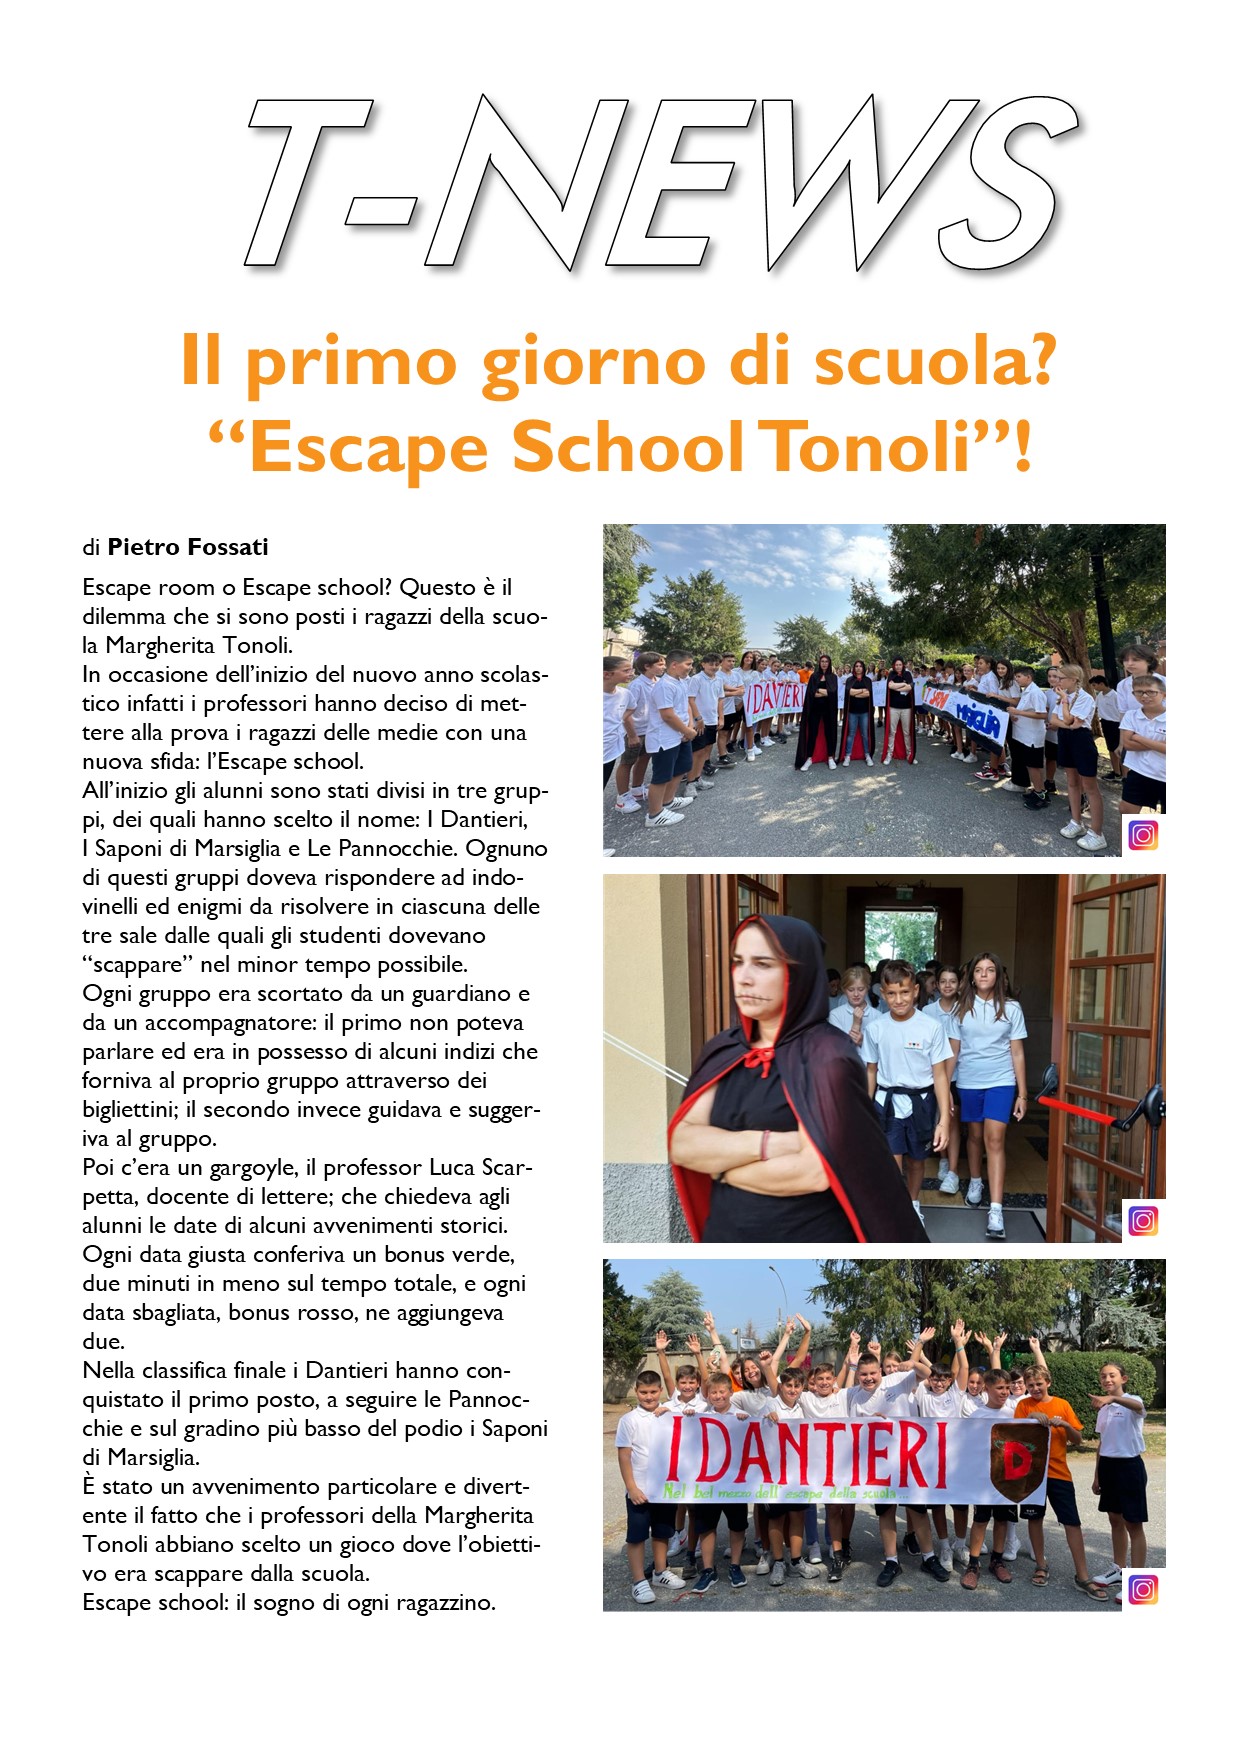 Escape School Tonoli!